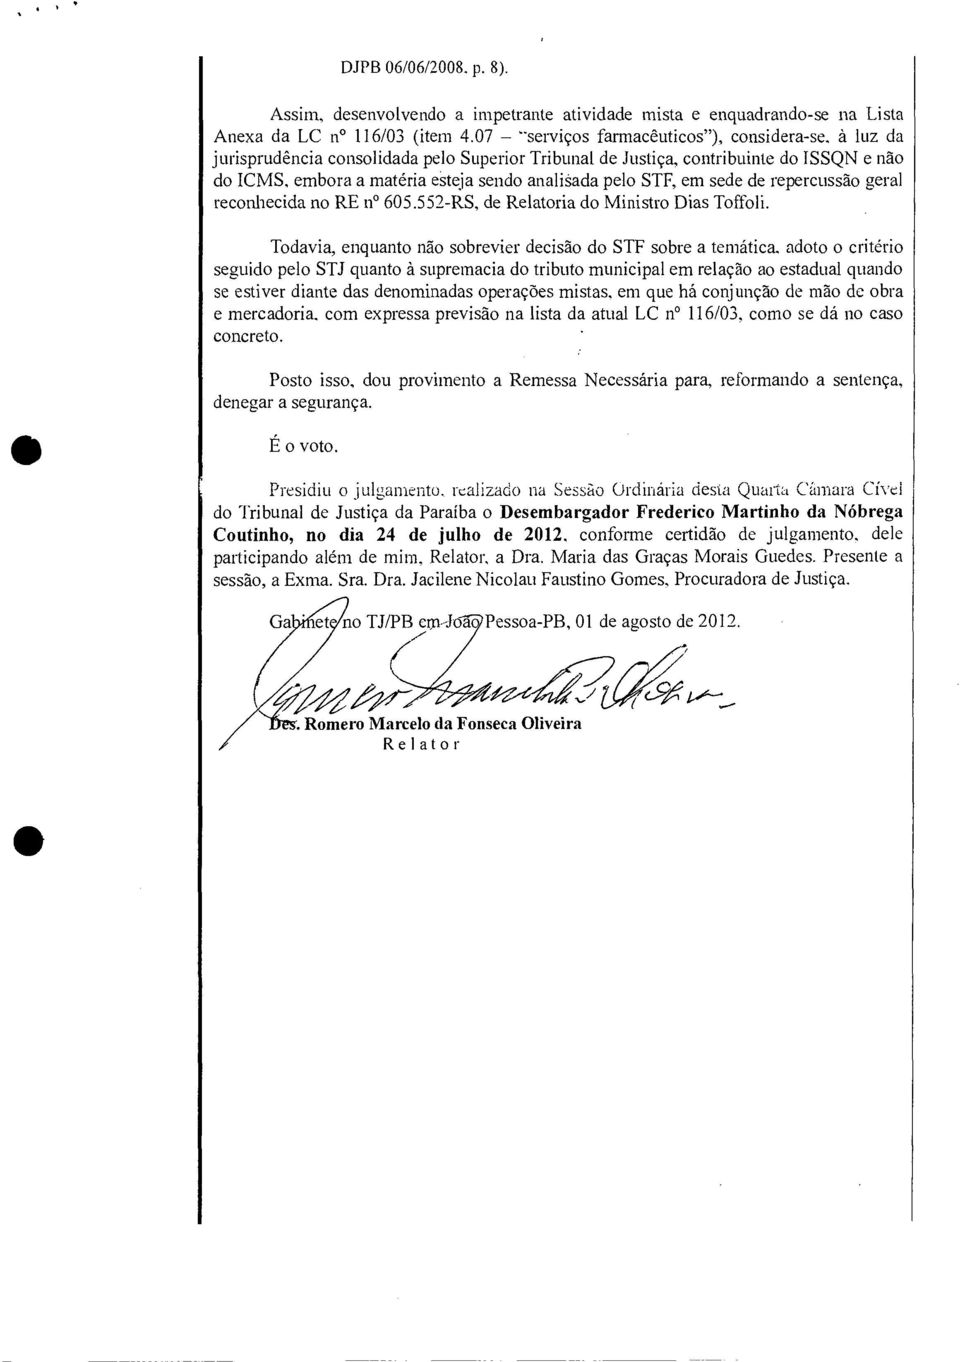 STF, em sede de repercussão geral reconhecida no RE n 605.552-RS, de Relatoria do Ministro Dias Toffoli.